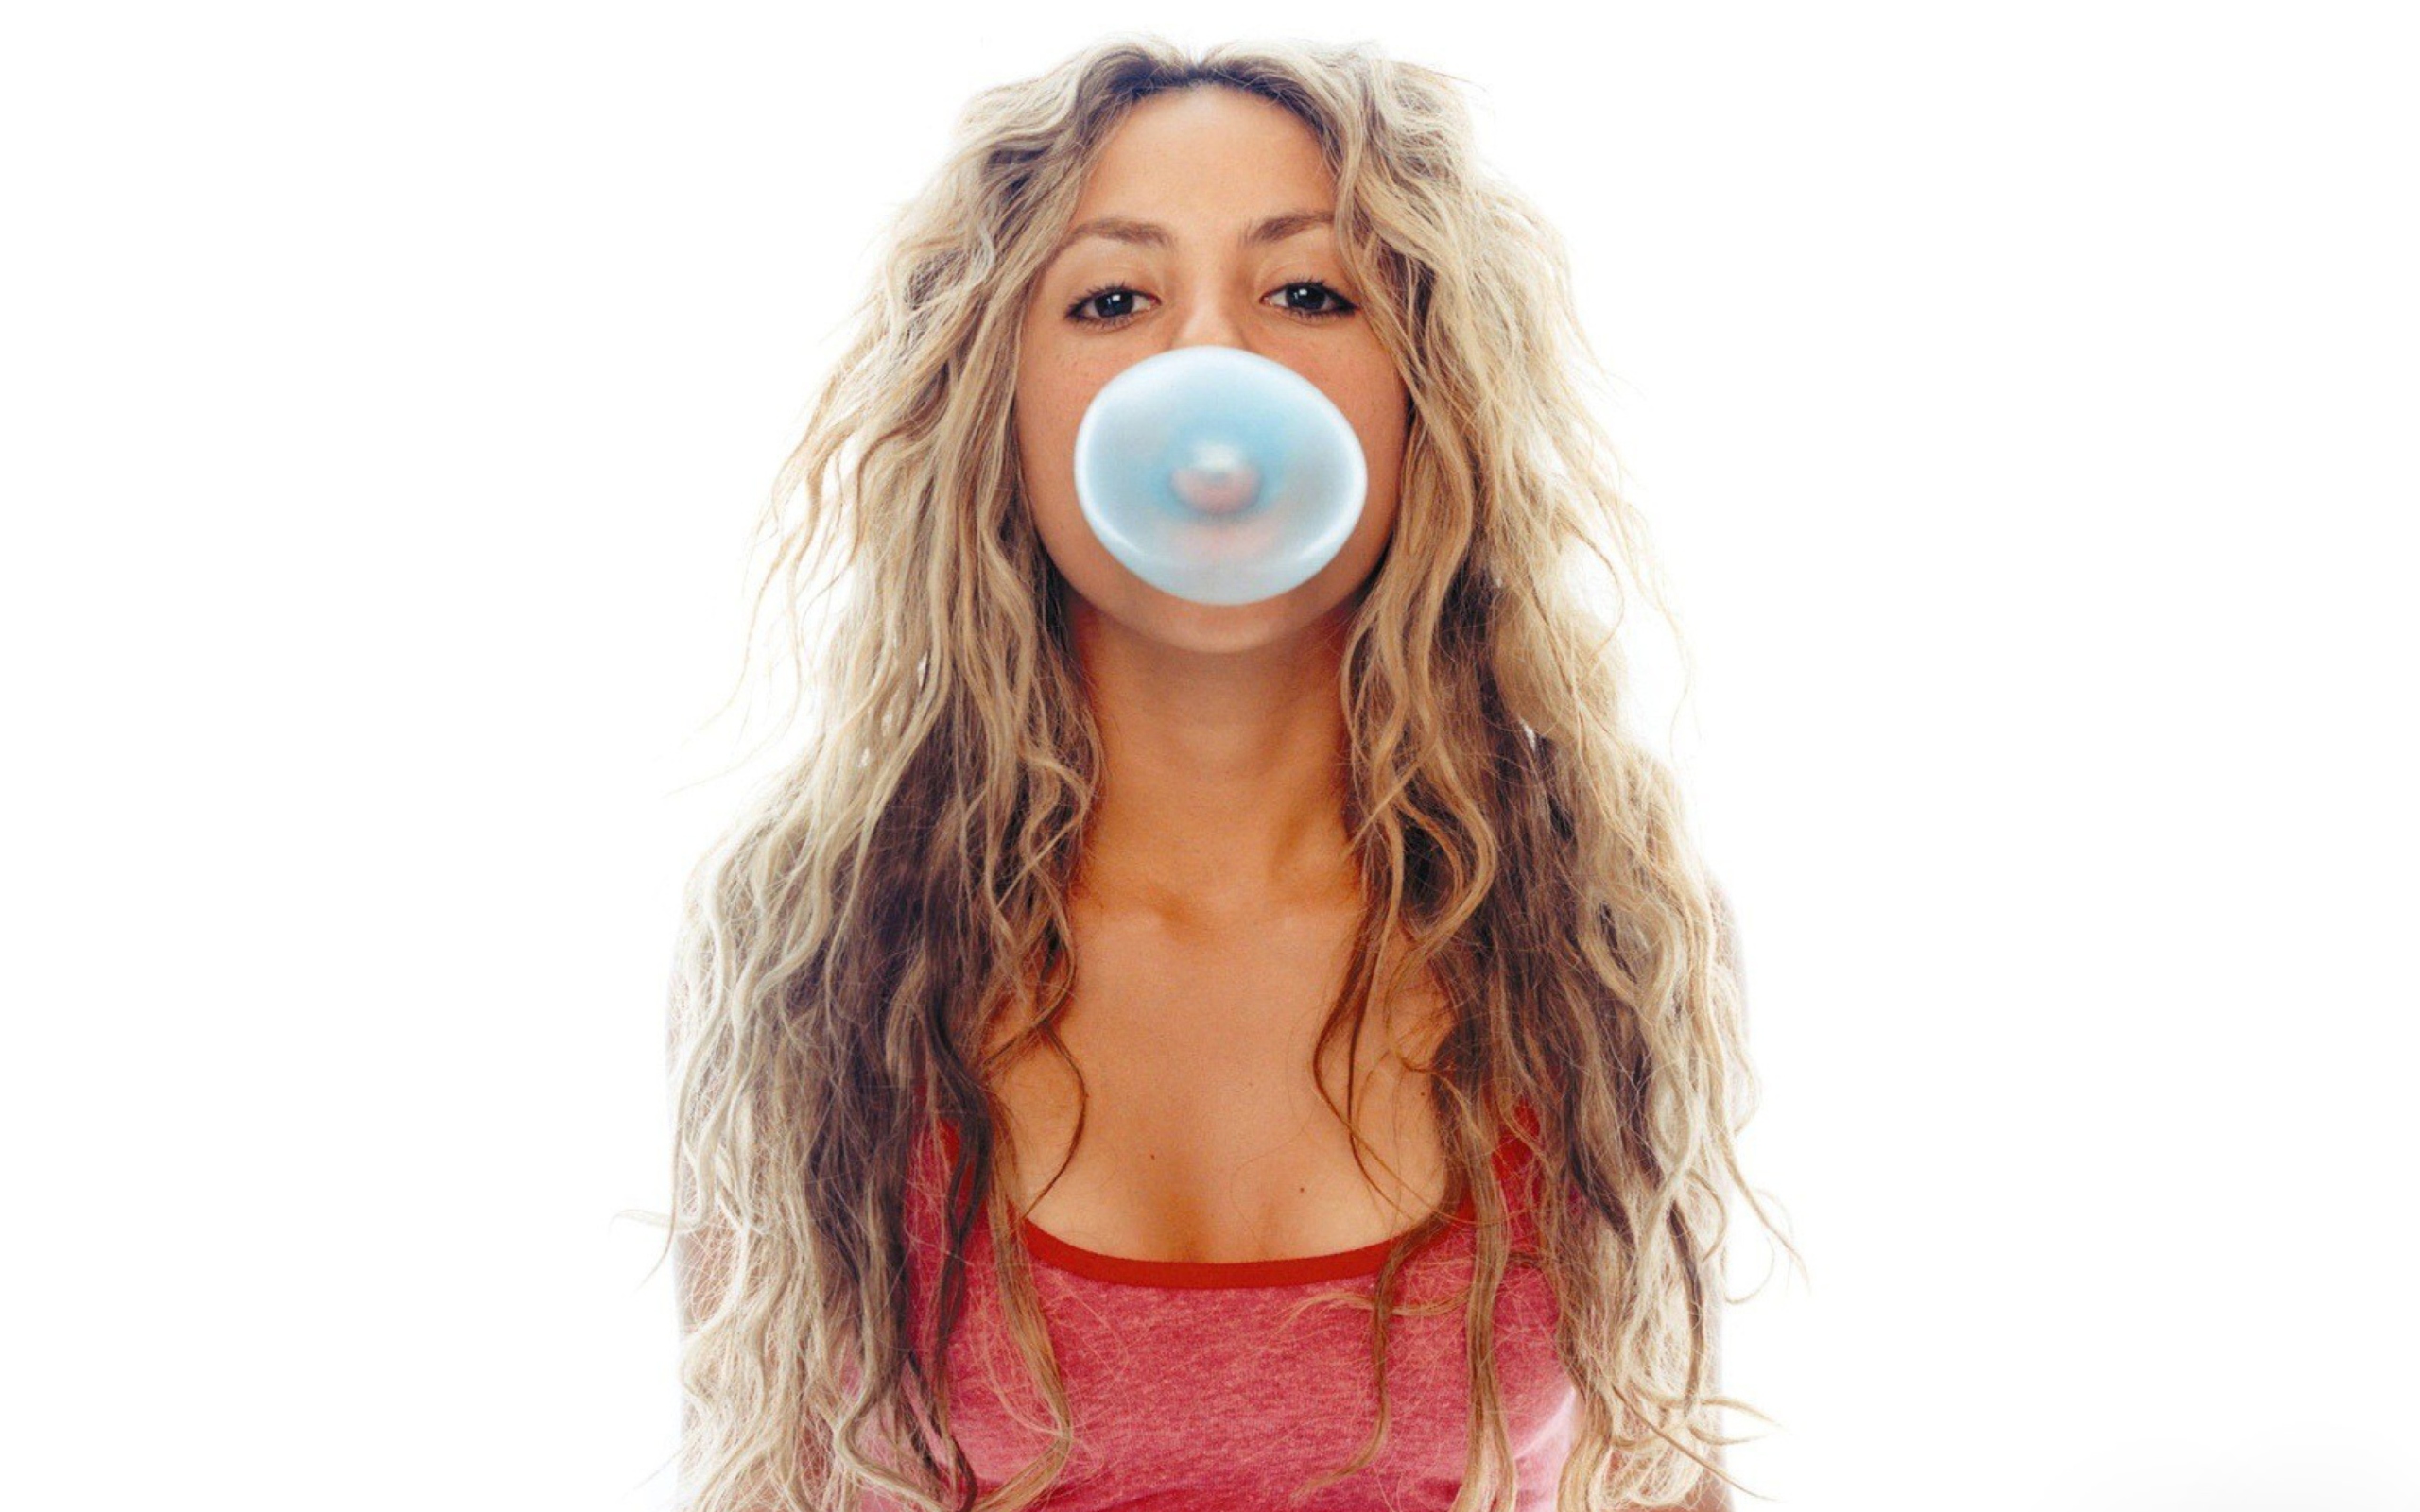 Sfondi Shakira And Bubble Gum 2560x1600